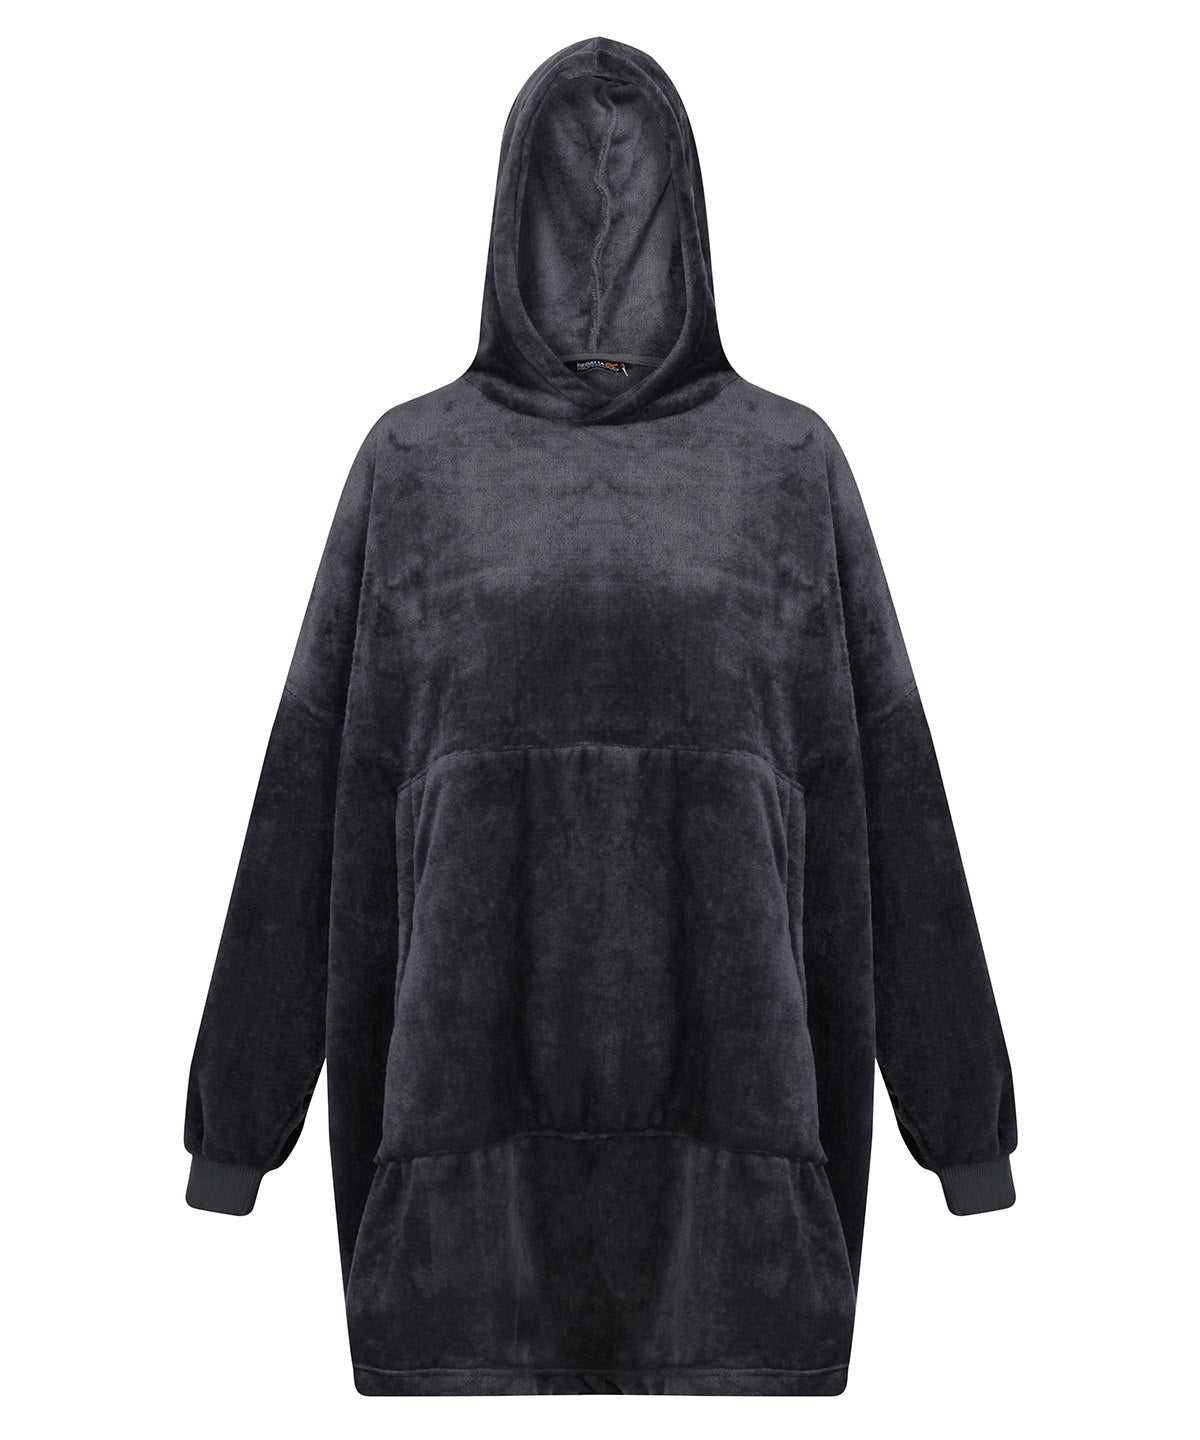 Personalised Hoodies - Dark Grey Regatta Professional Snuggler oversized fleece hoodie